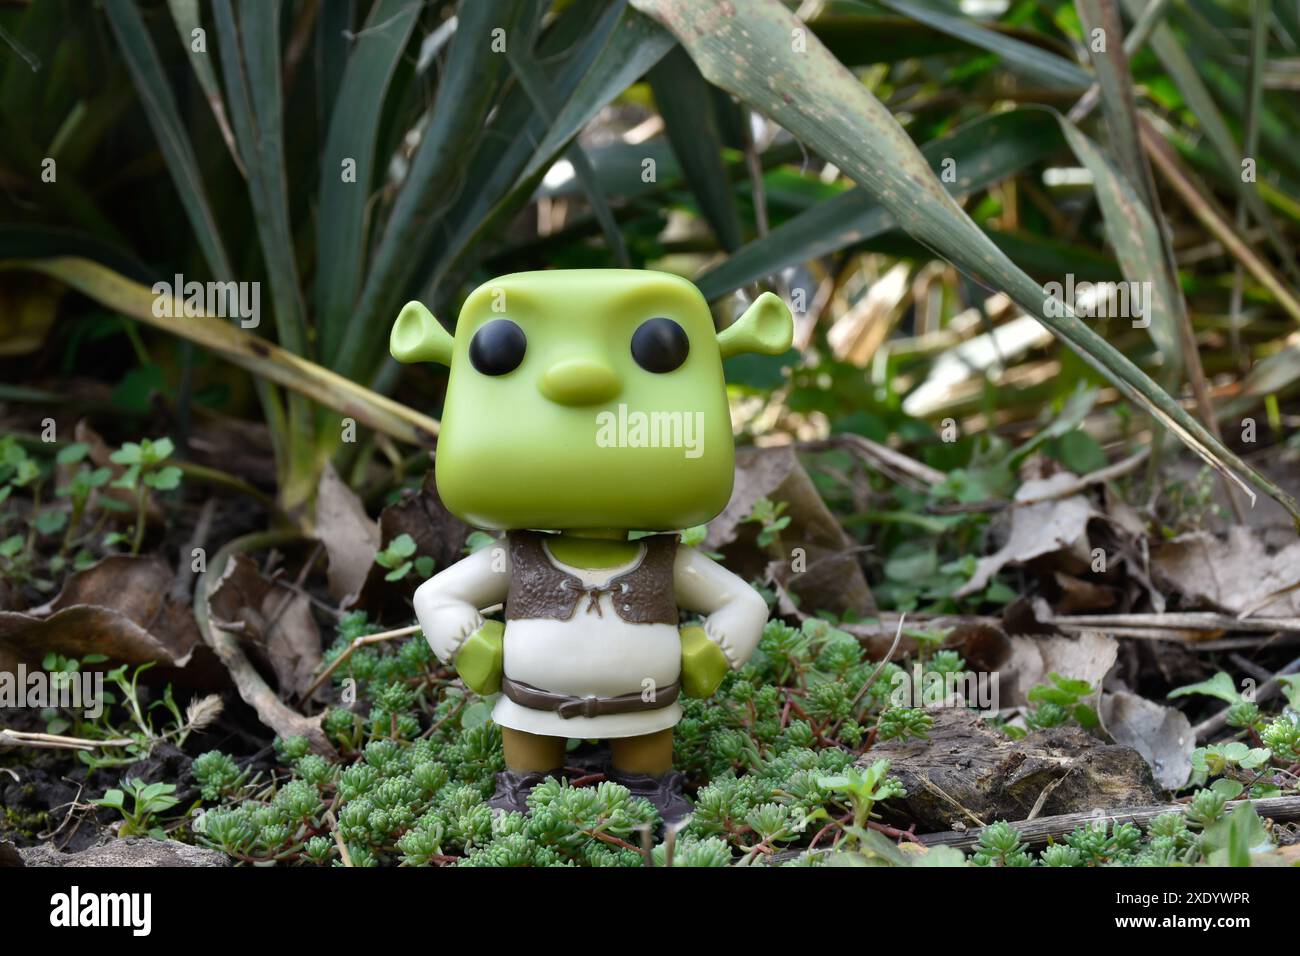 Funko Pop figurine d'action de personnage fictif ogre Shrek du film d'animation populaire. Forêt fabuleuse, marais, mousse verte, plantes, herbe. Banque D'Images